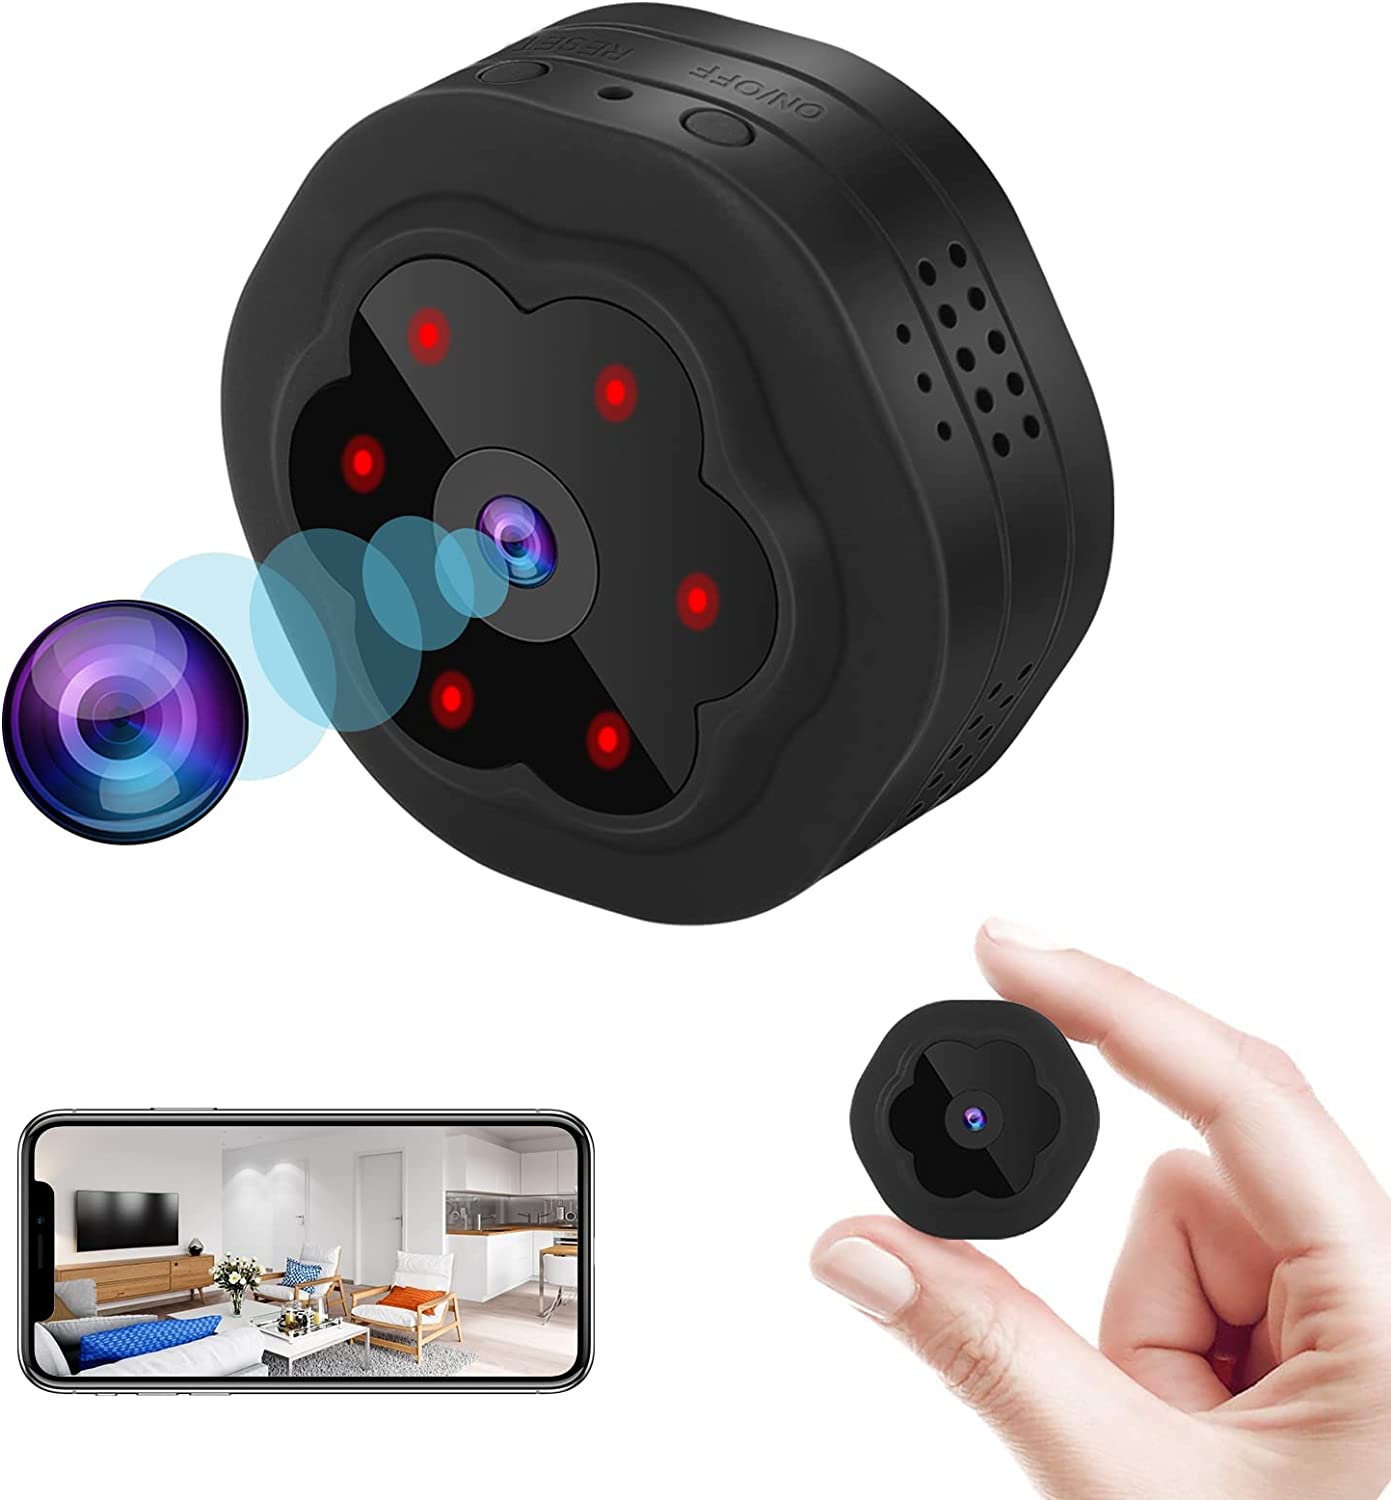 Mini Spy Cameras, Tiny Spy Cameras for Sale